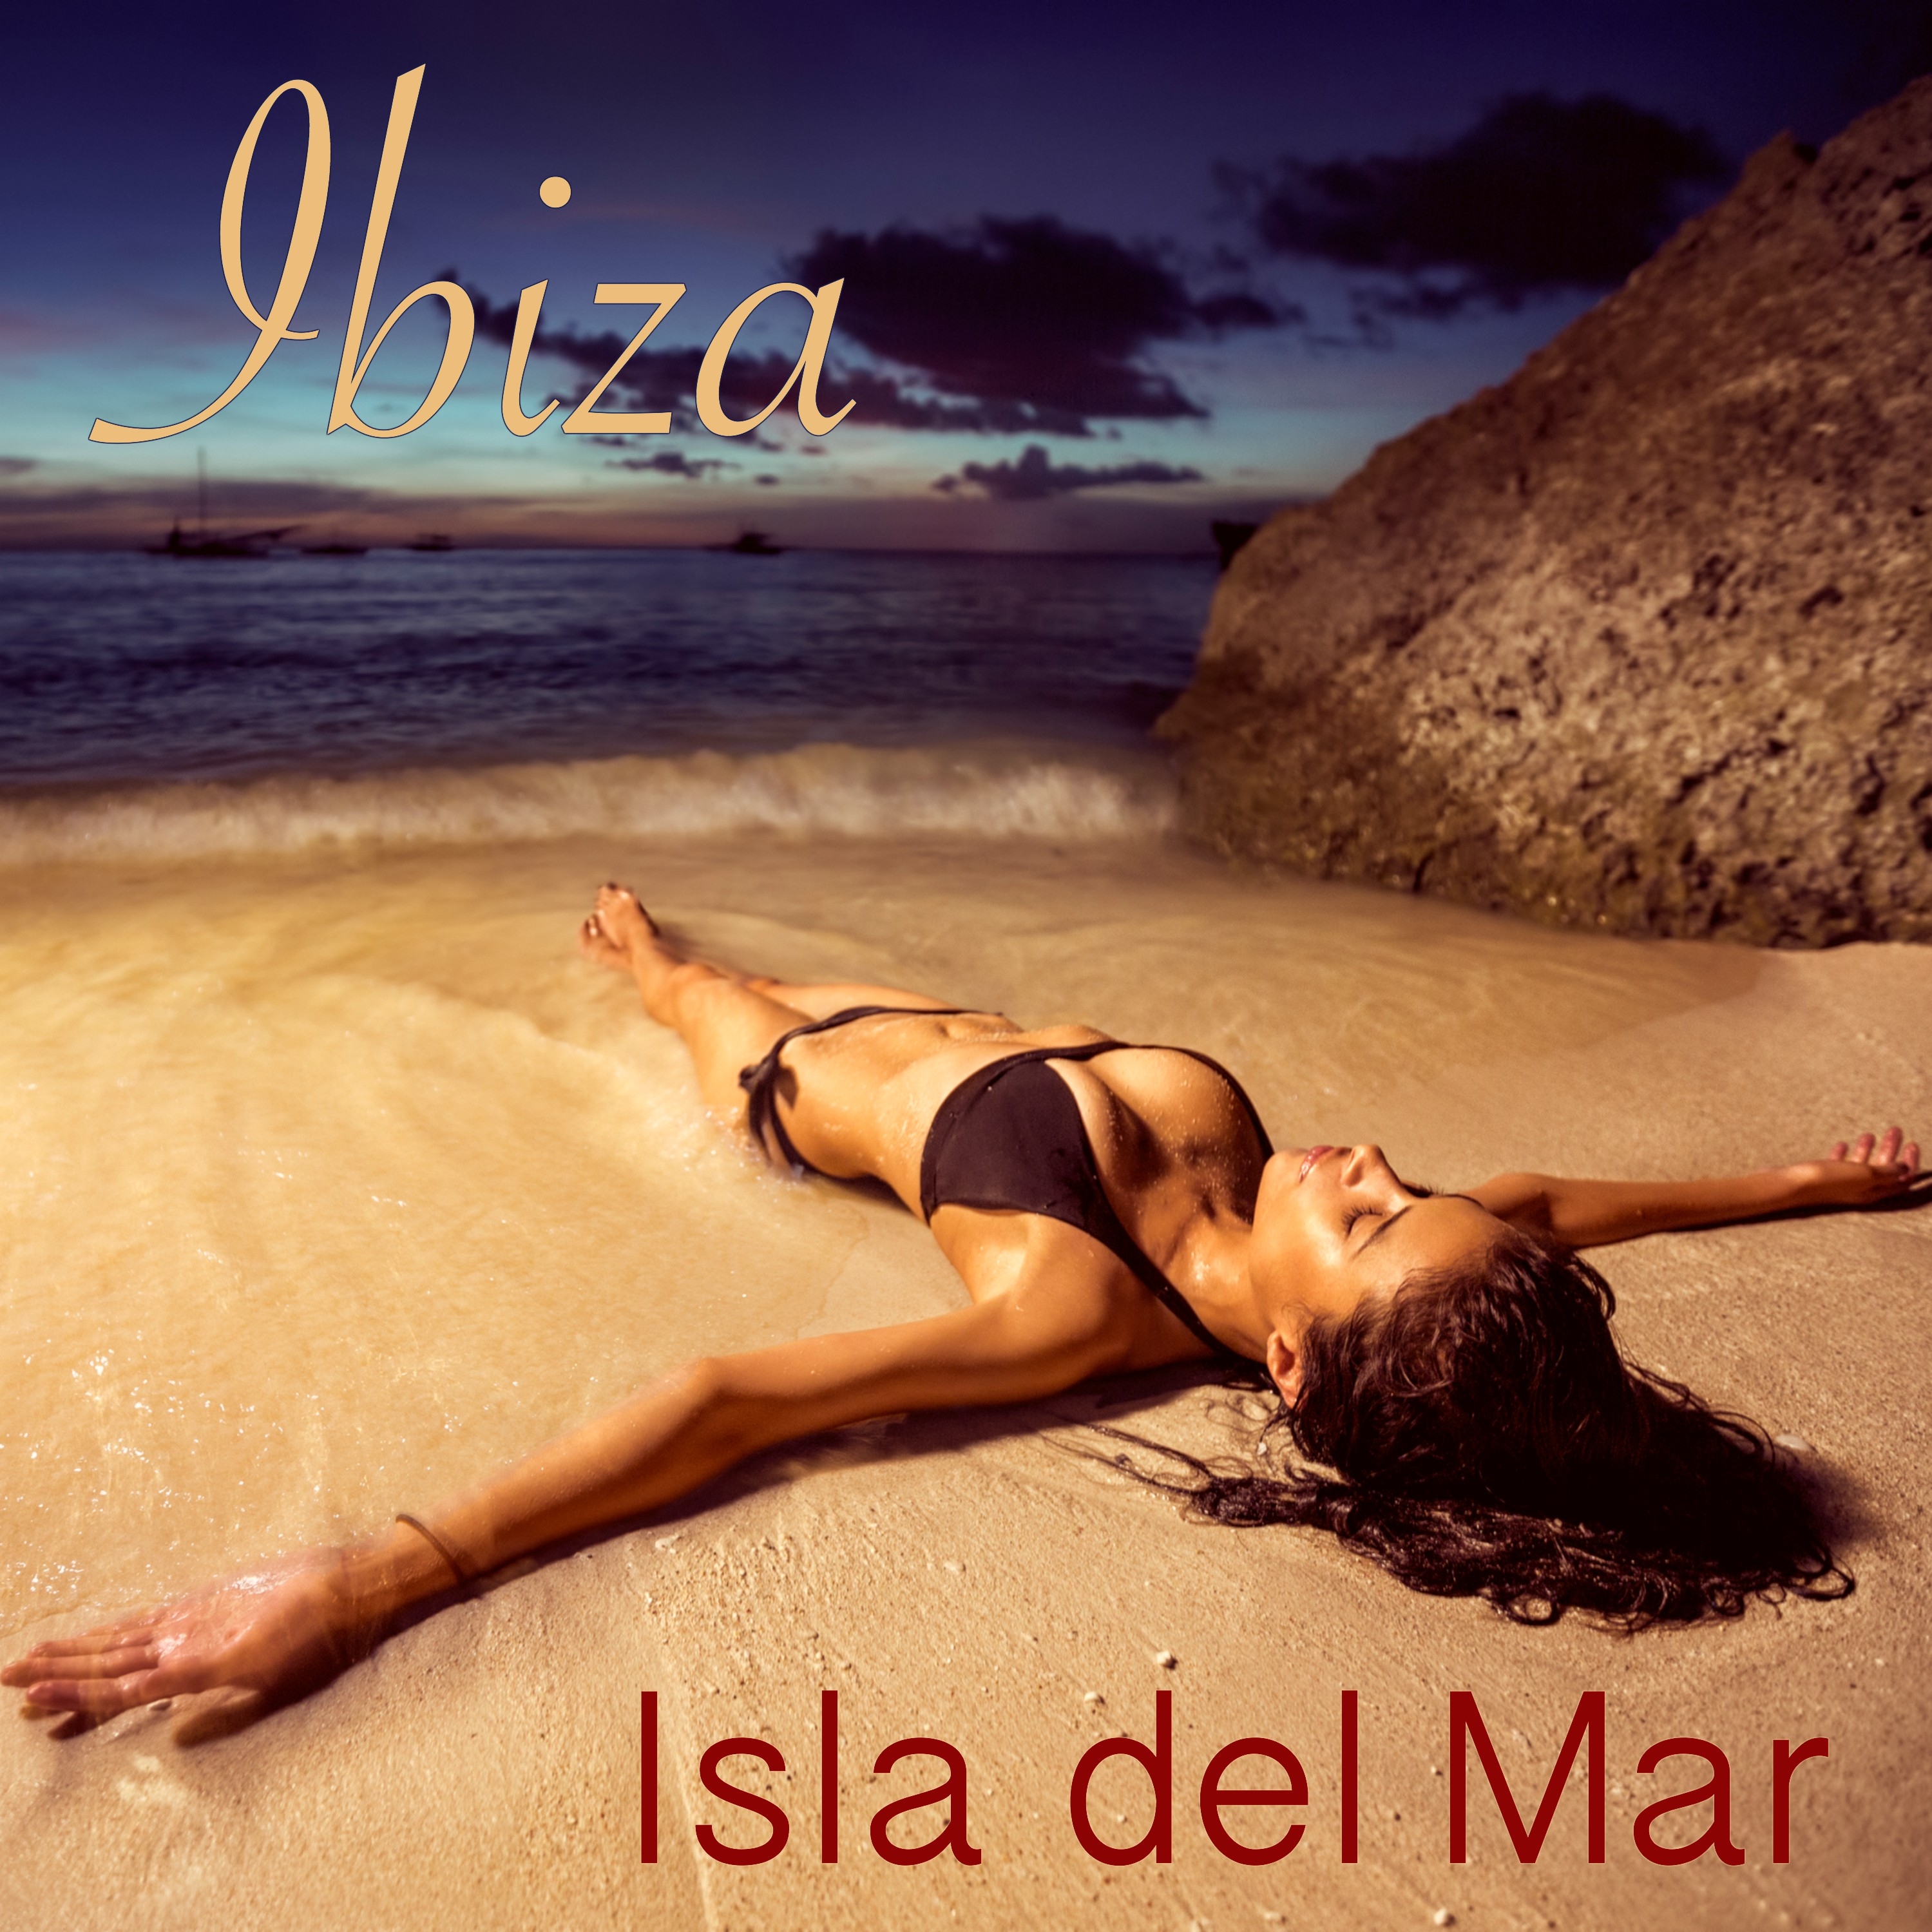 Ibiza Dreams